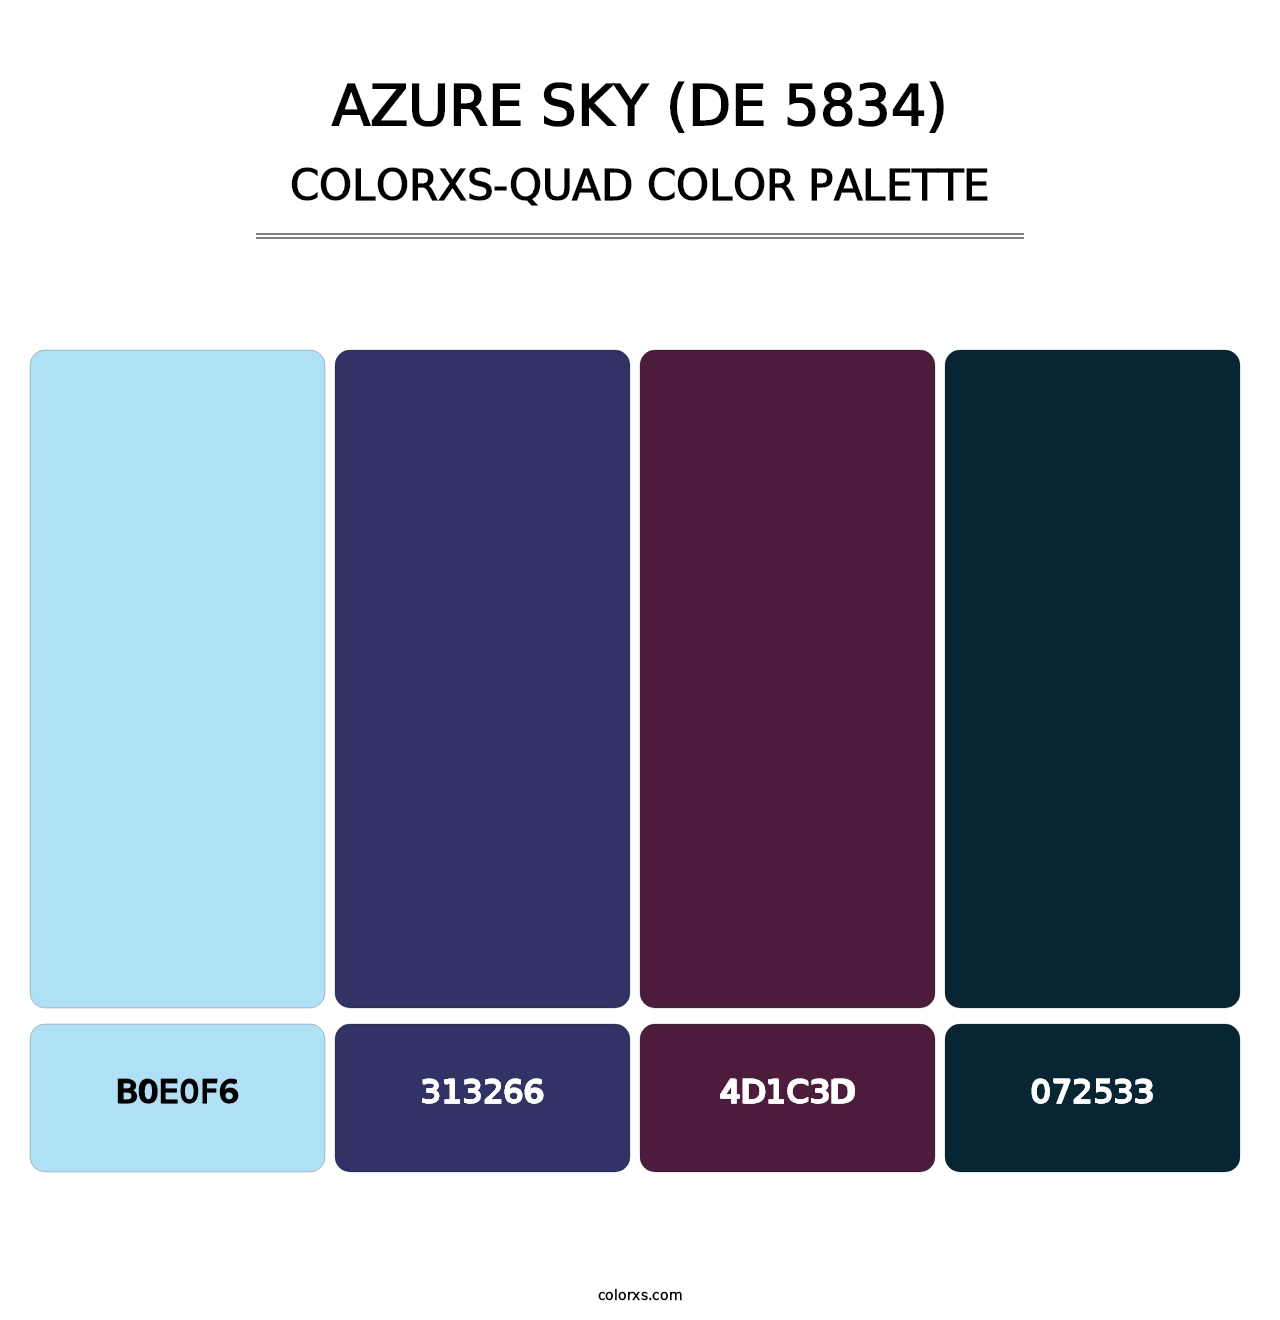 Azure Sky (DE 5834) - Colorxs Quad Palette